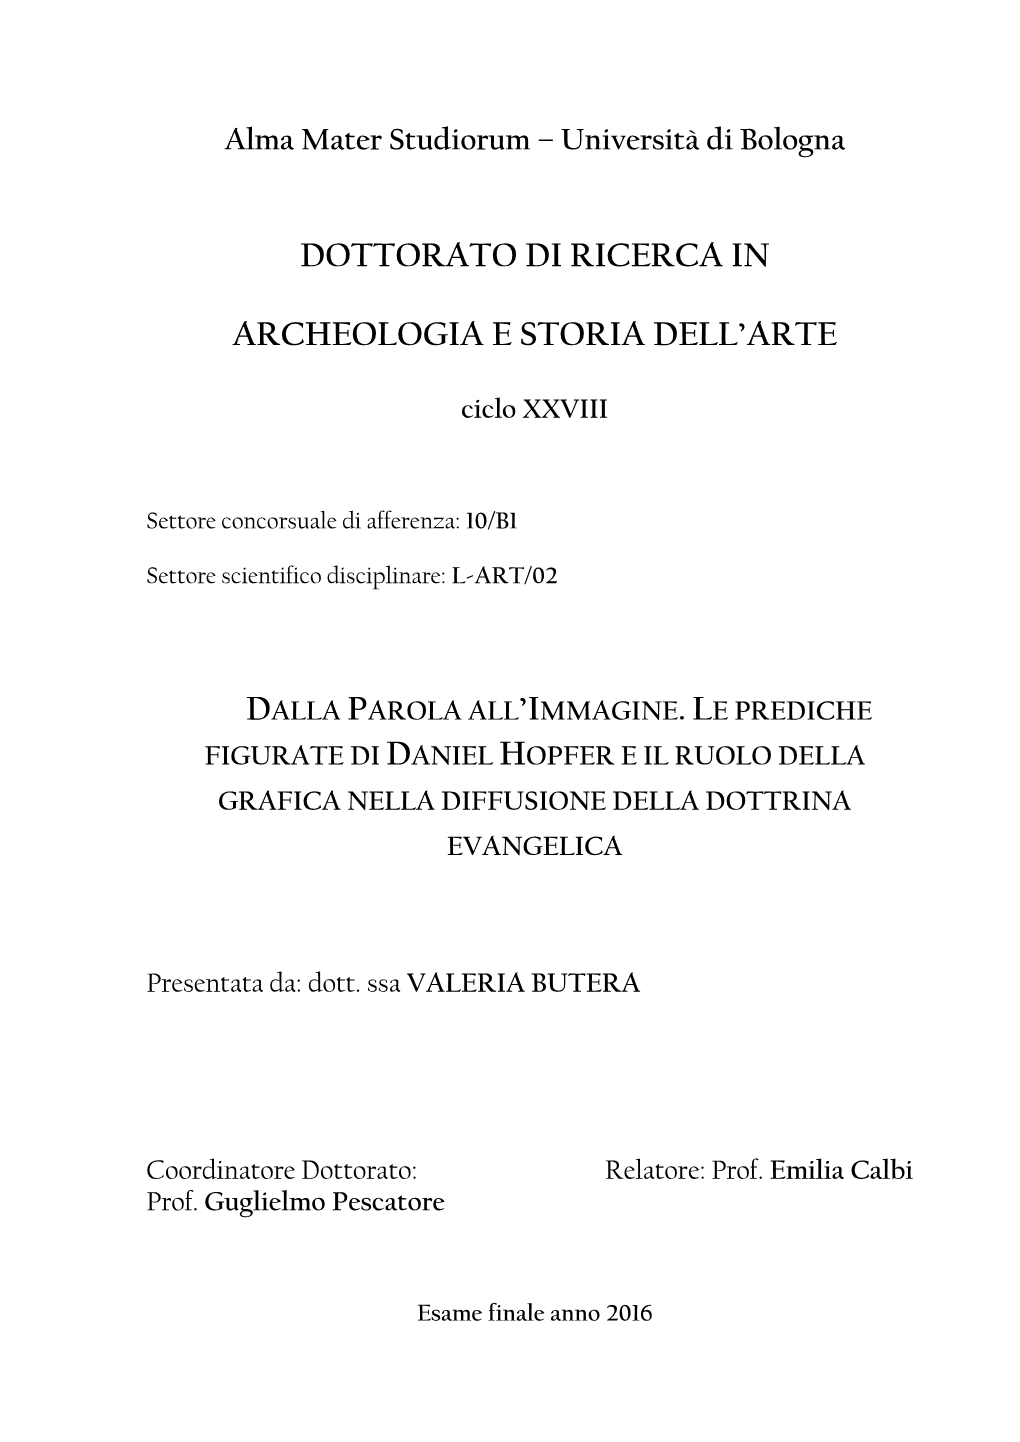 Dottorato Di Ricerca in Archeologia E Storia Dell